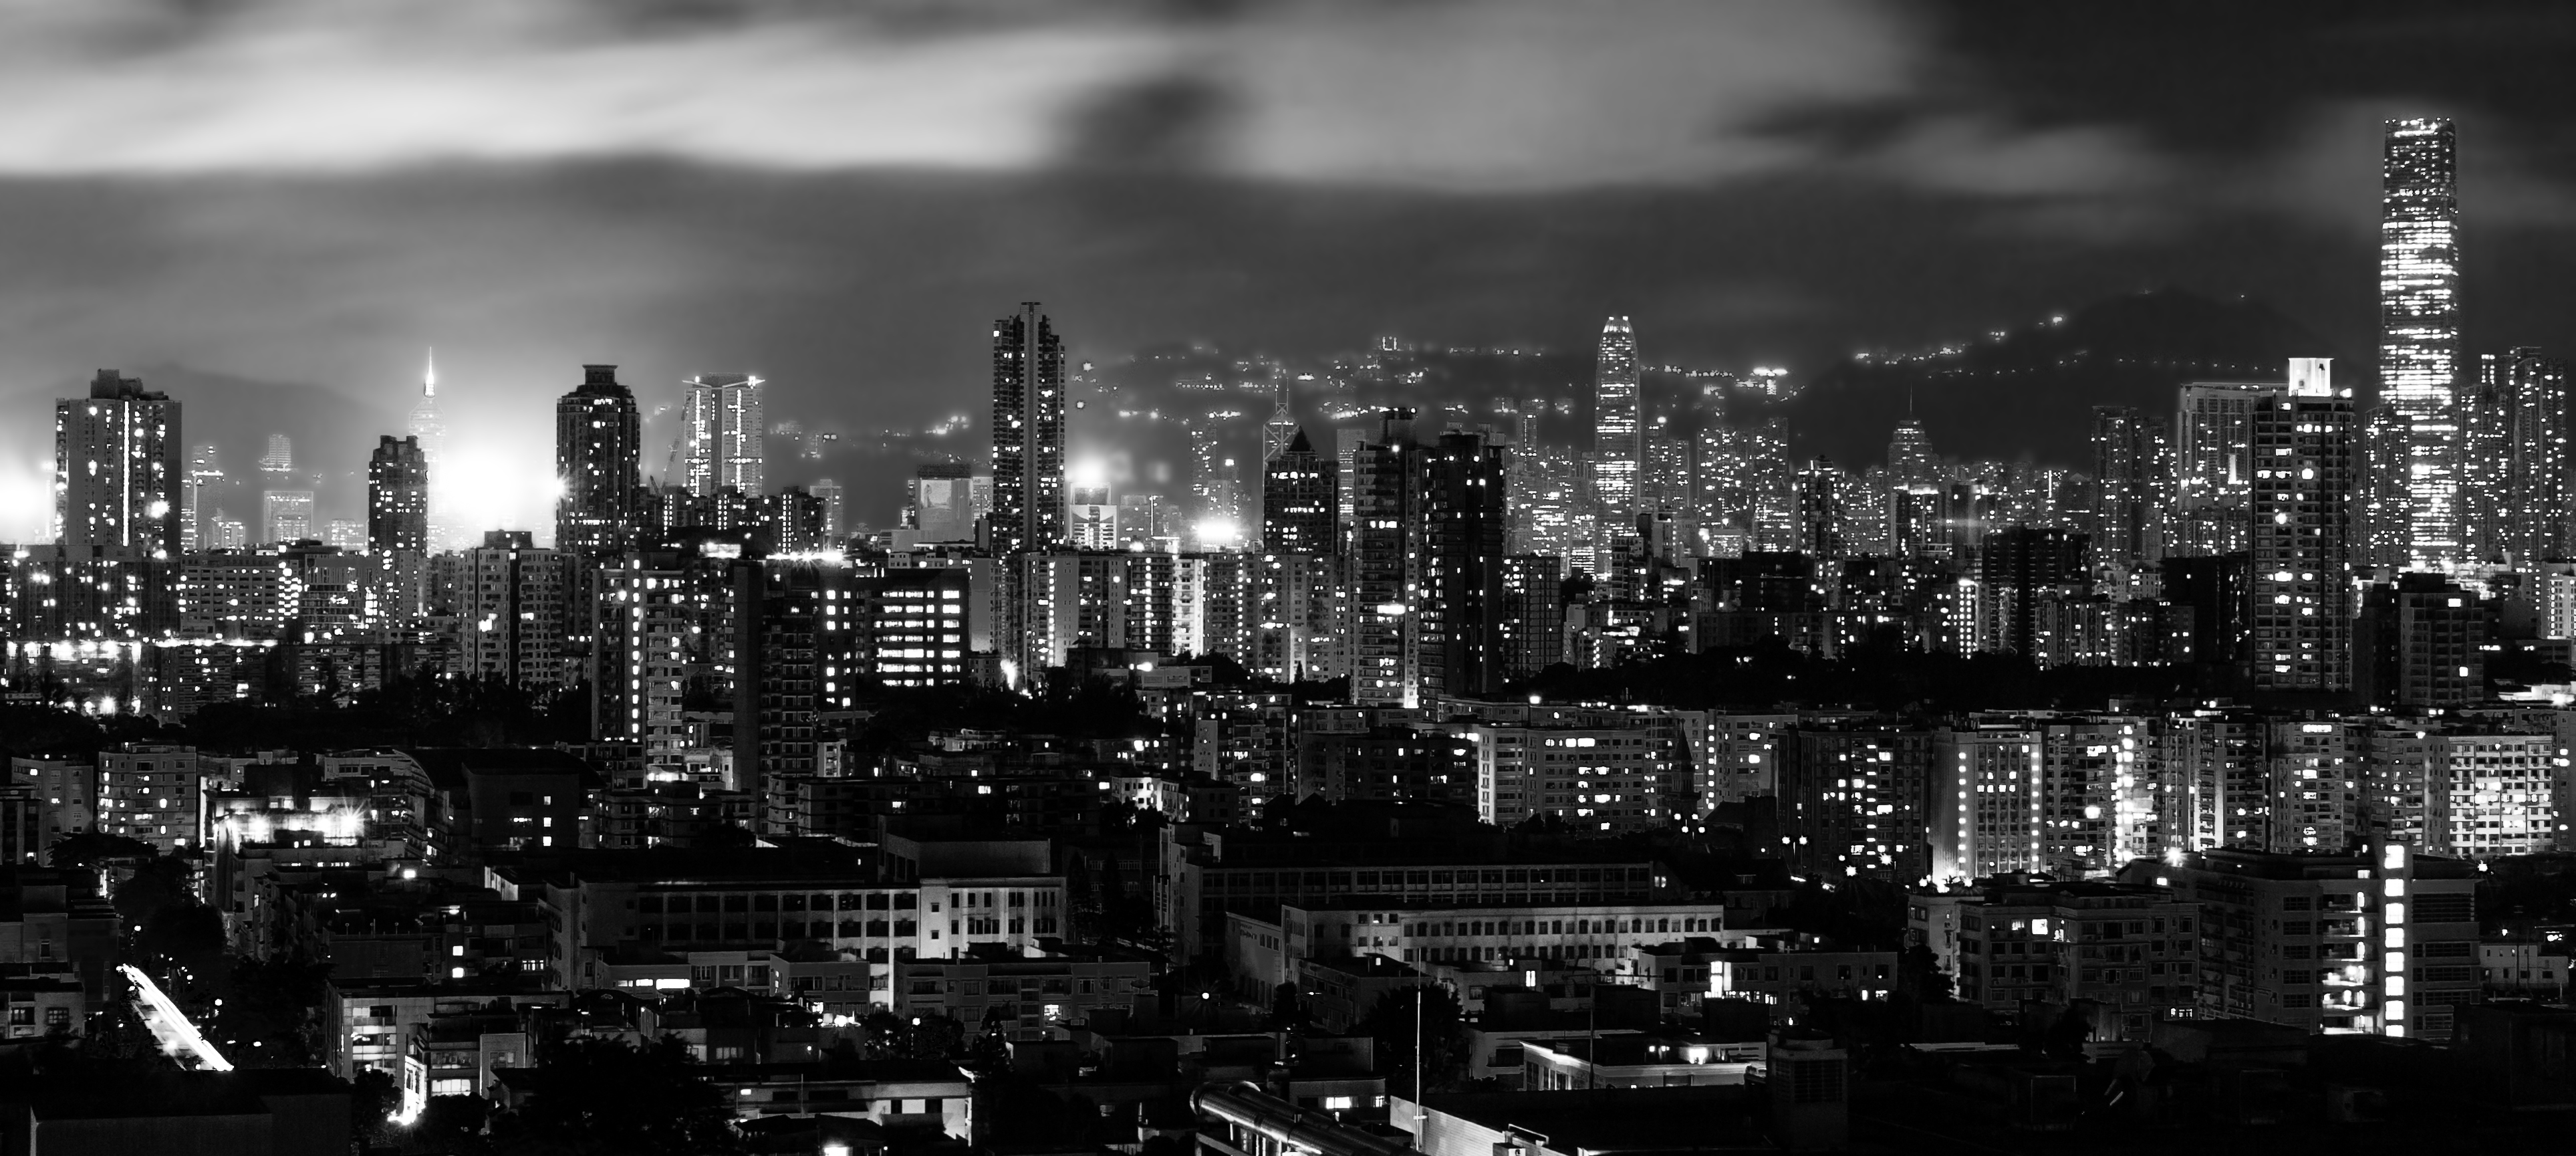 Hong Kong at night B&W